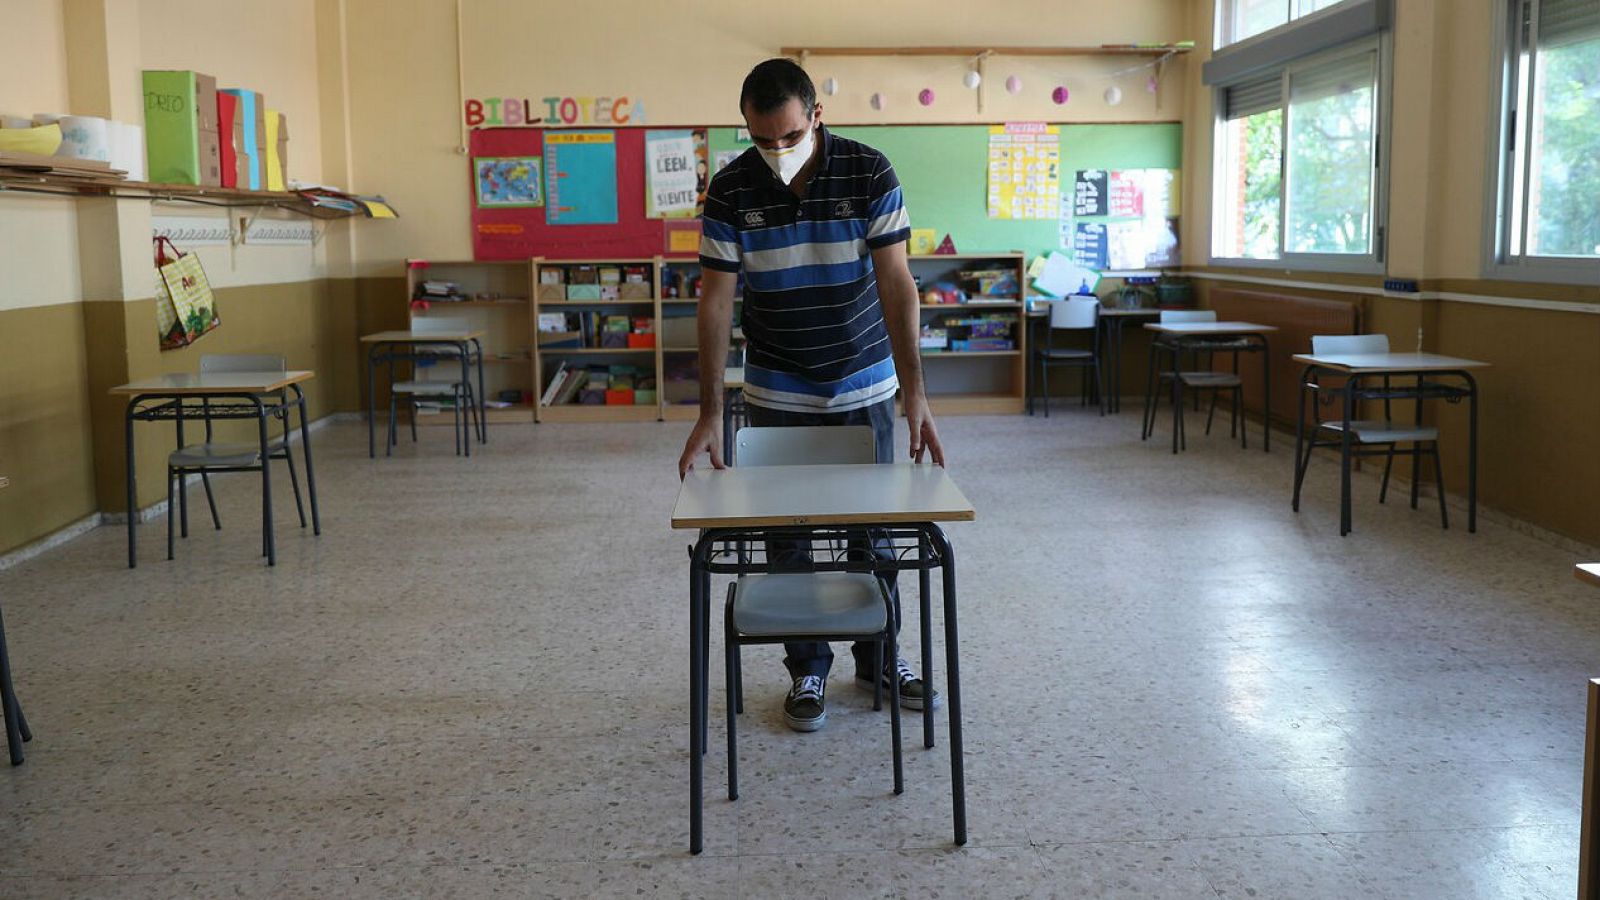 Sanidad asegura que la vuelta a los colegios en septiembre deberá prepararse "con mucha precaución" - RTVE.es